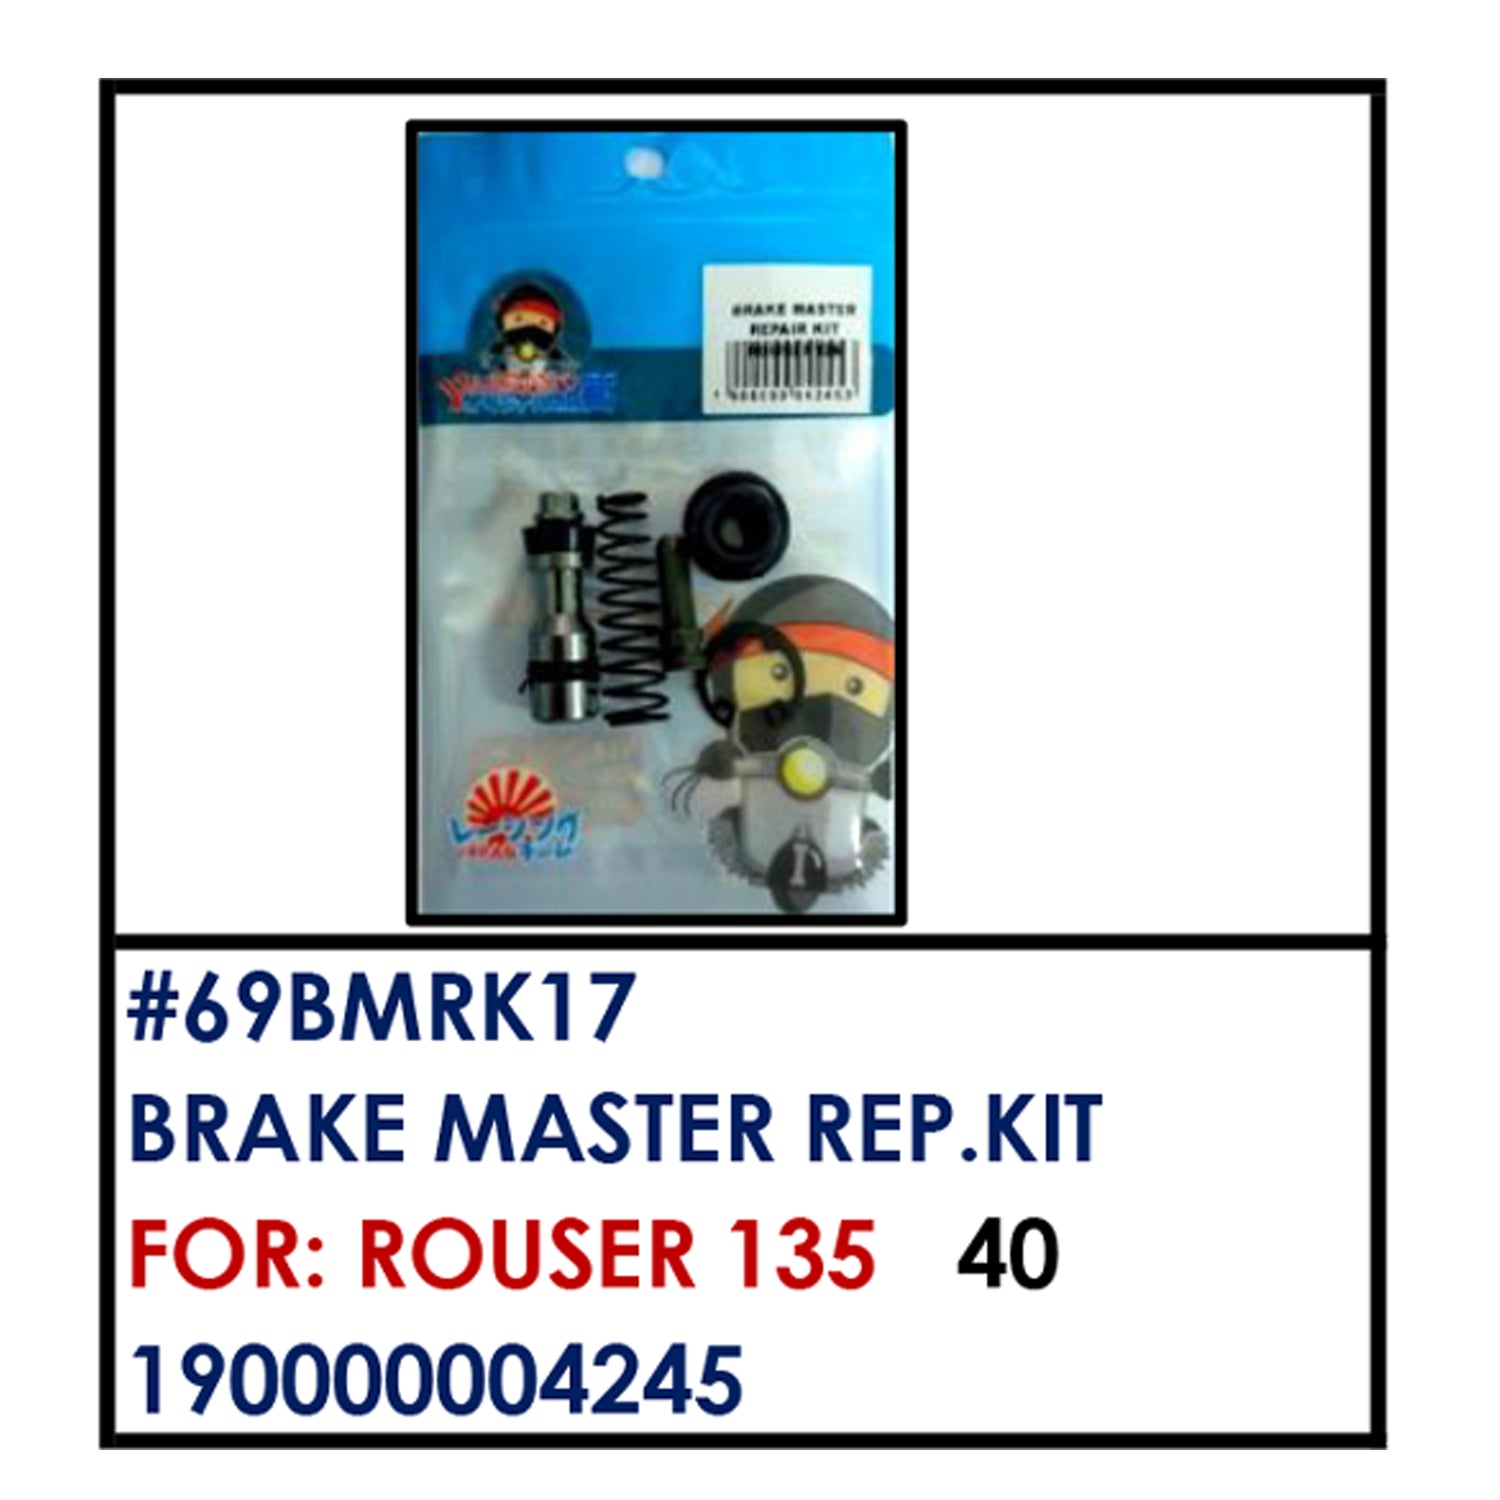 BRAKE MASTER REAPIR KIT (69BMRK17) - ROUSER 135 | YAKIMOTO - BESTPARTS.PH